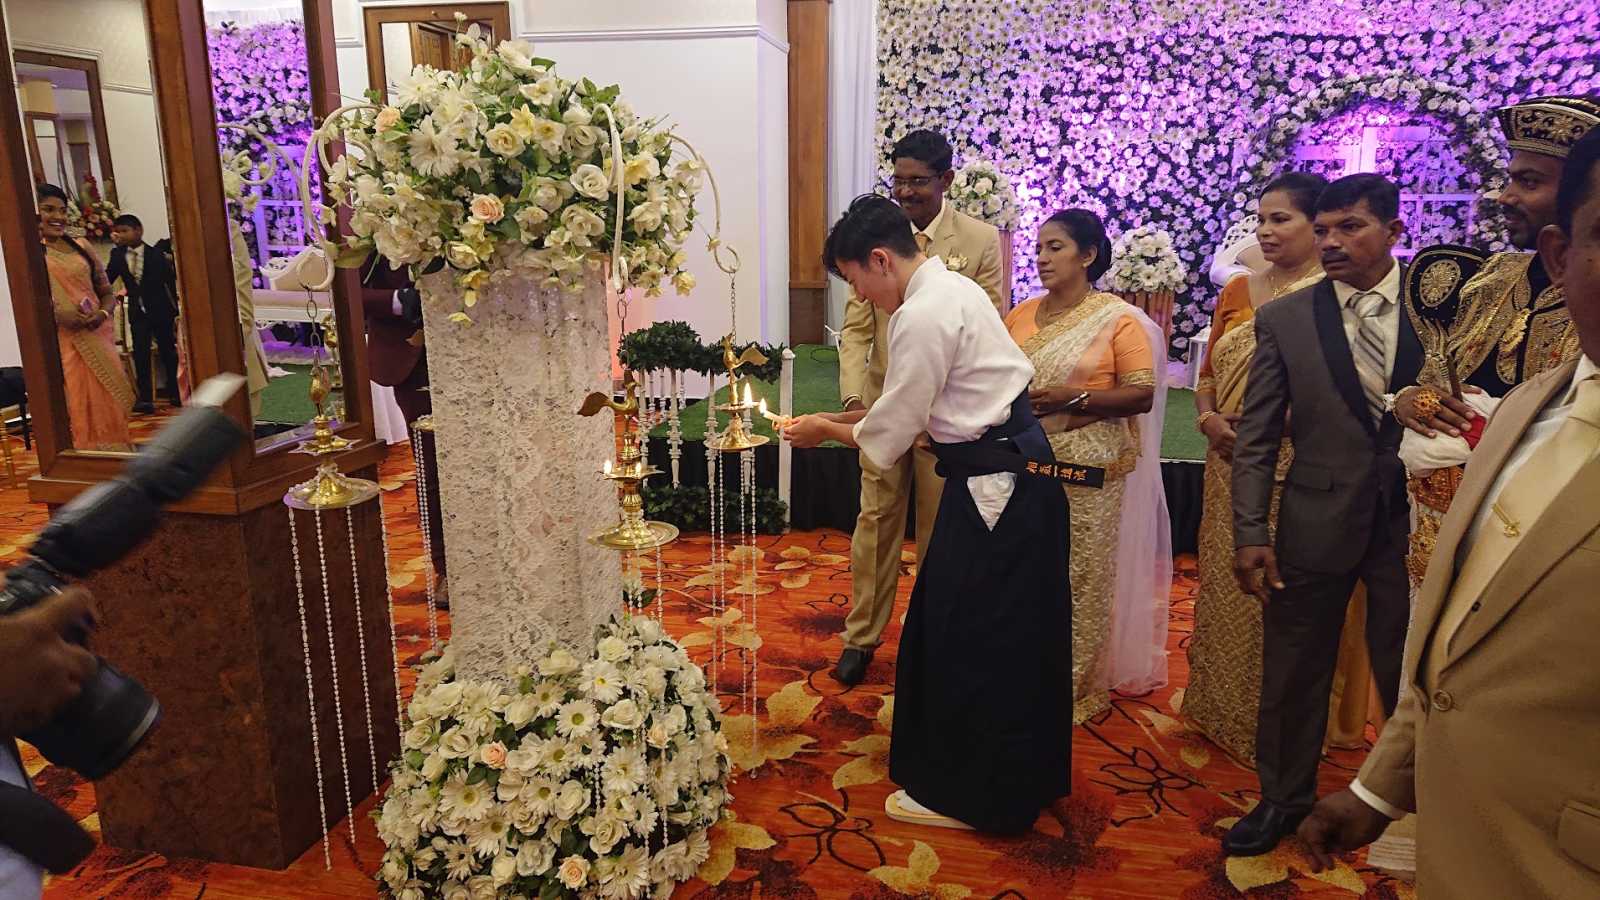 スリランカの首都コロンボで開催されたスリランカ人の門人の結婚式に、宗家と門下生4人が参加してきました。結婚式では、宗家と門人による相氣一進流の演武を披露しました。